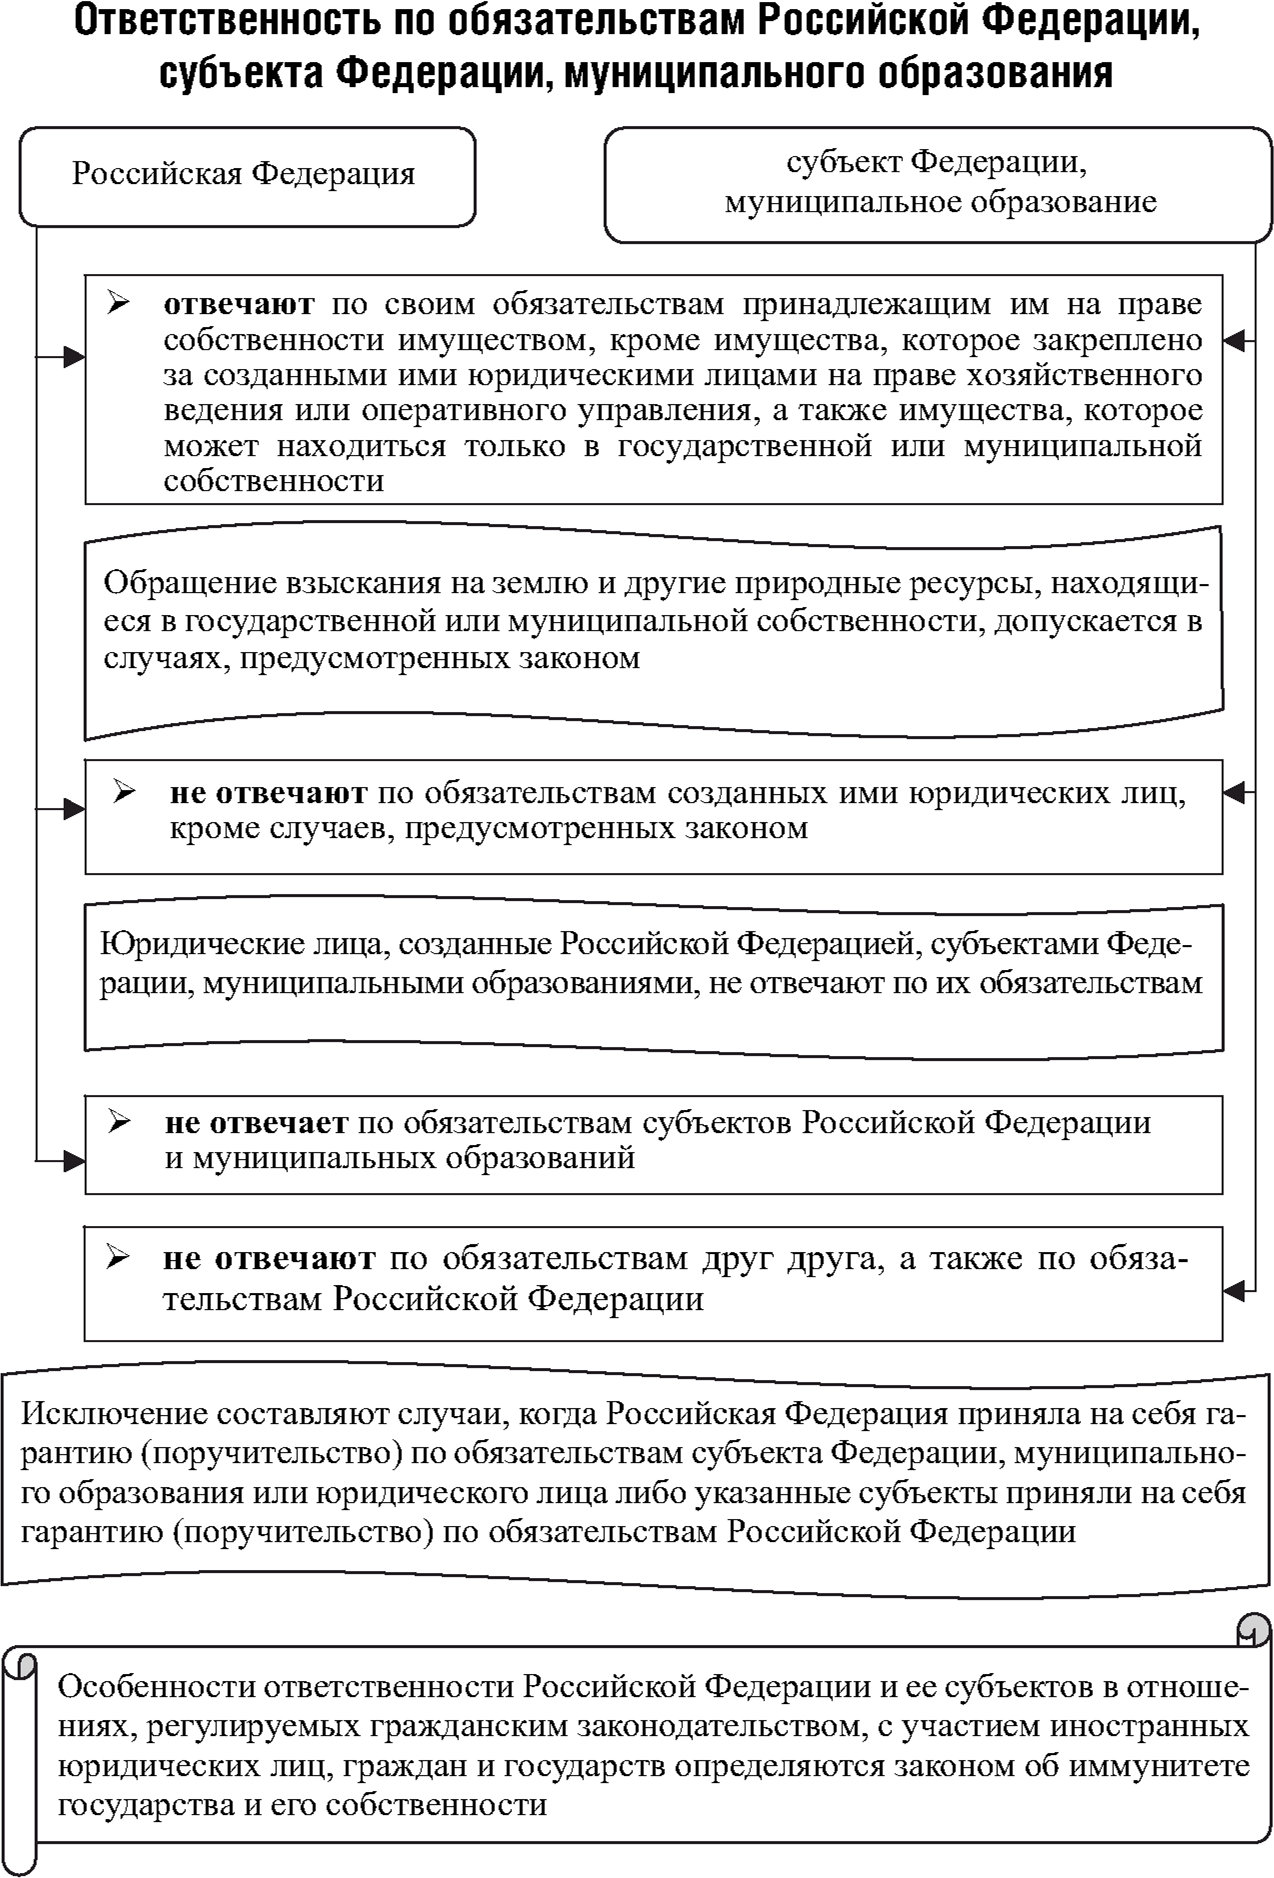 Ответственность по обязательствам Российской Федерации, субъекта Федерации, муниципального образован